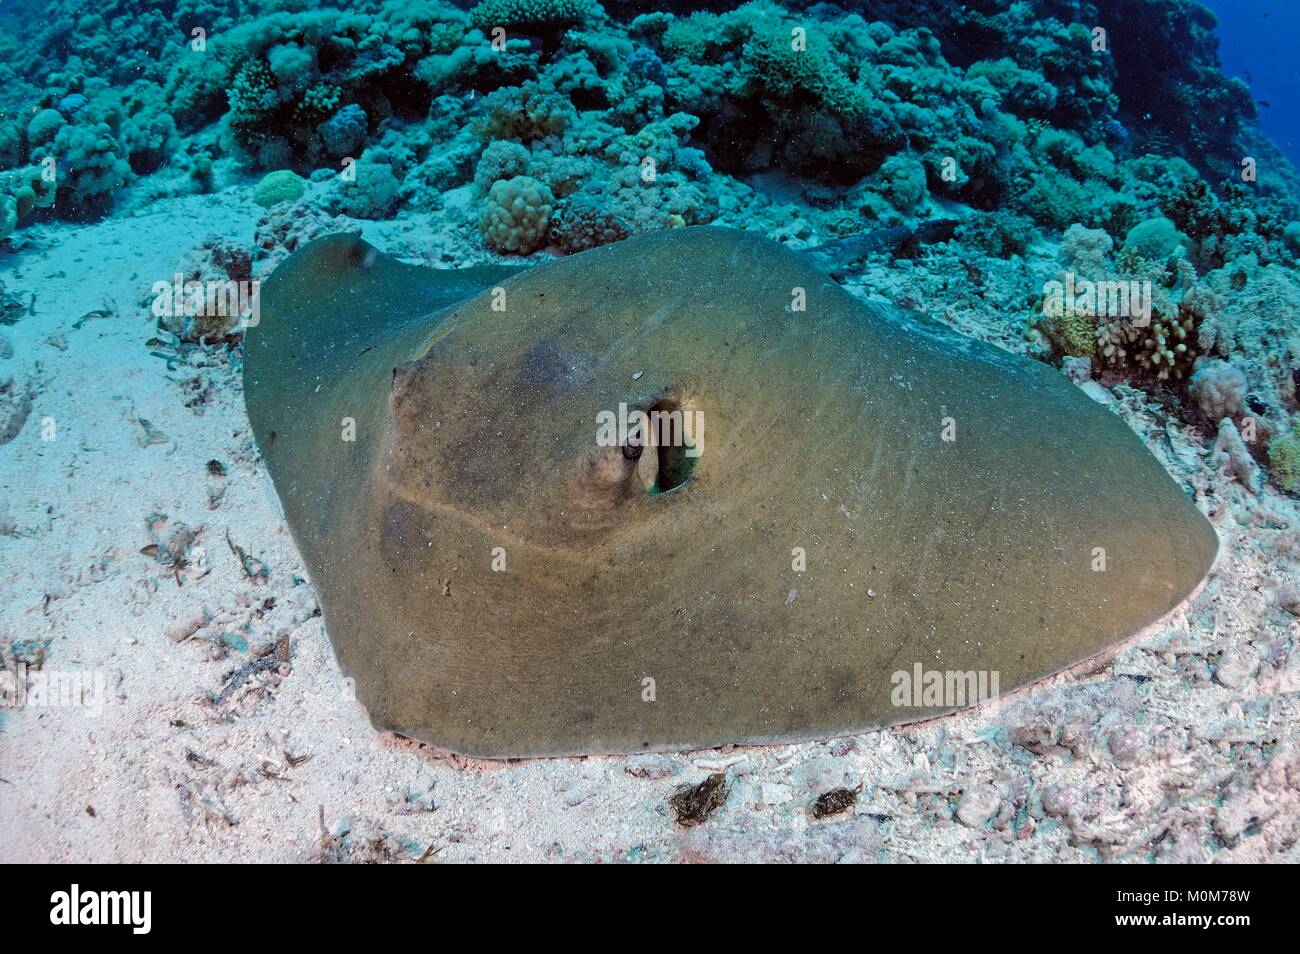 Egypt,Red Sea,a feathertail stingray (Pastinachus sephen) Stock Photo